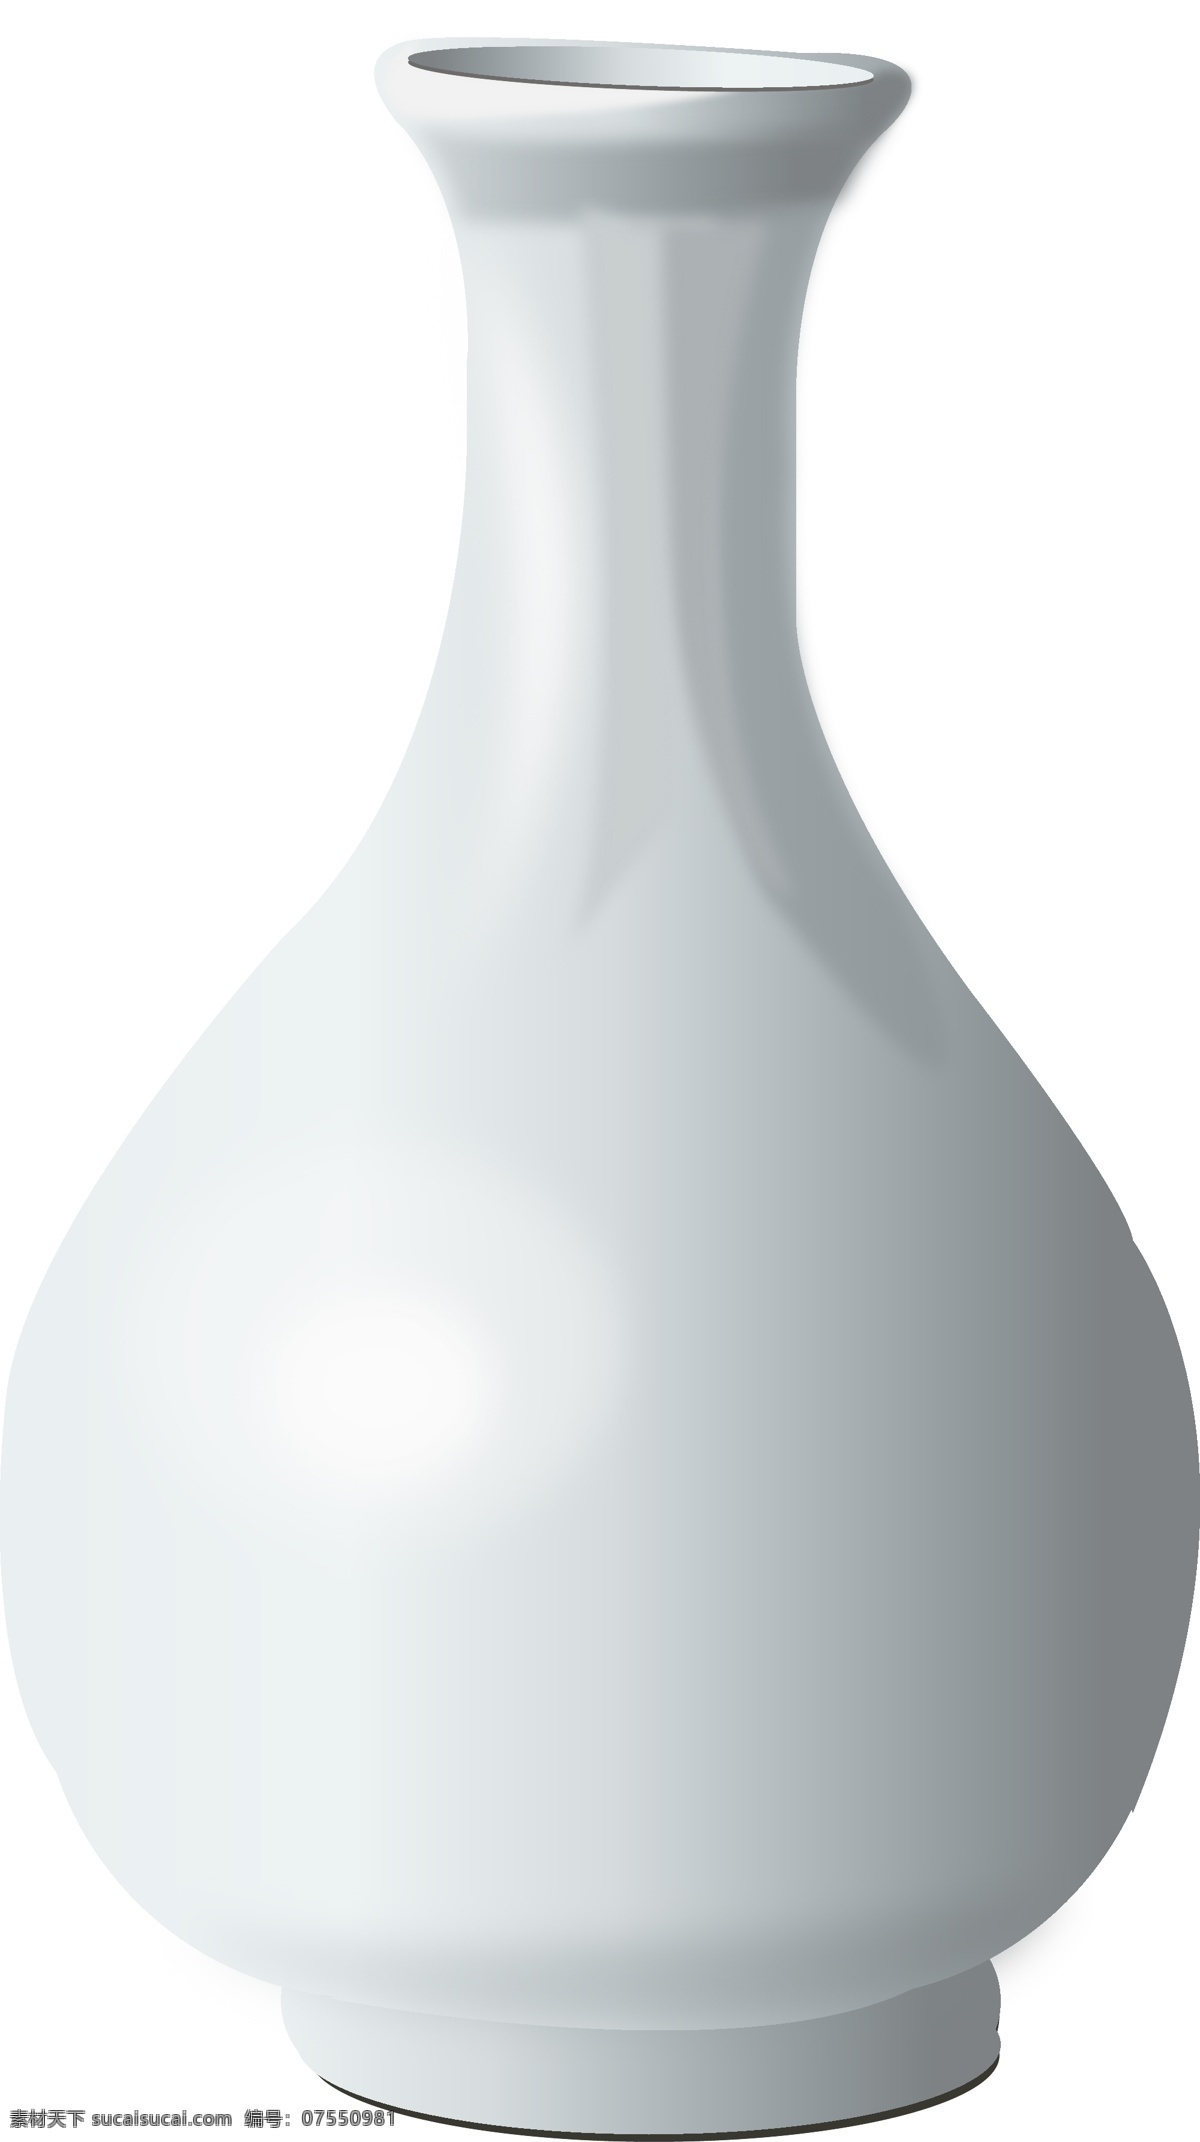 简约 白色 花瓶 插画 白色瓷瓶 花盆 插画瓶子 瓷器瓶子 花瓶装饰瓶子 简约白色瓶子 卡通插画 瓶子插画